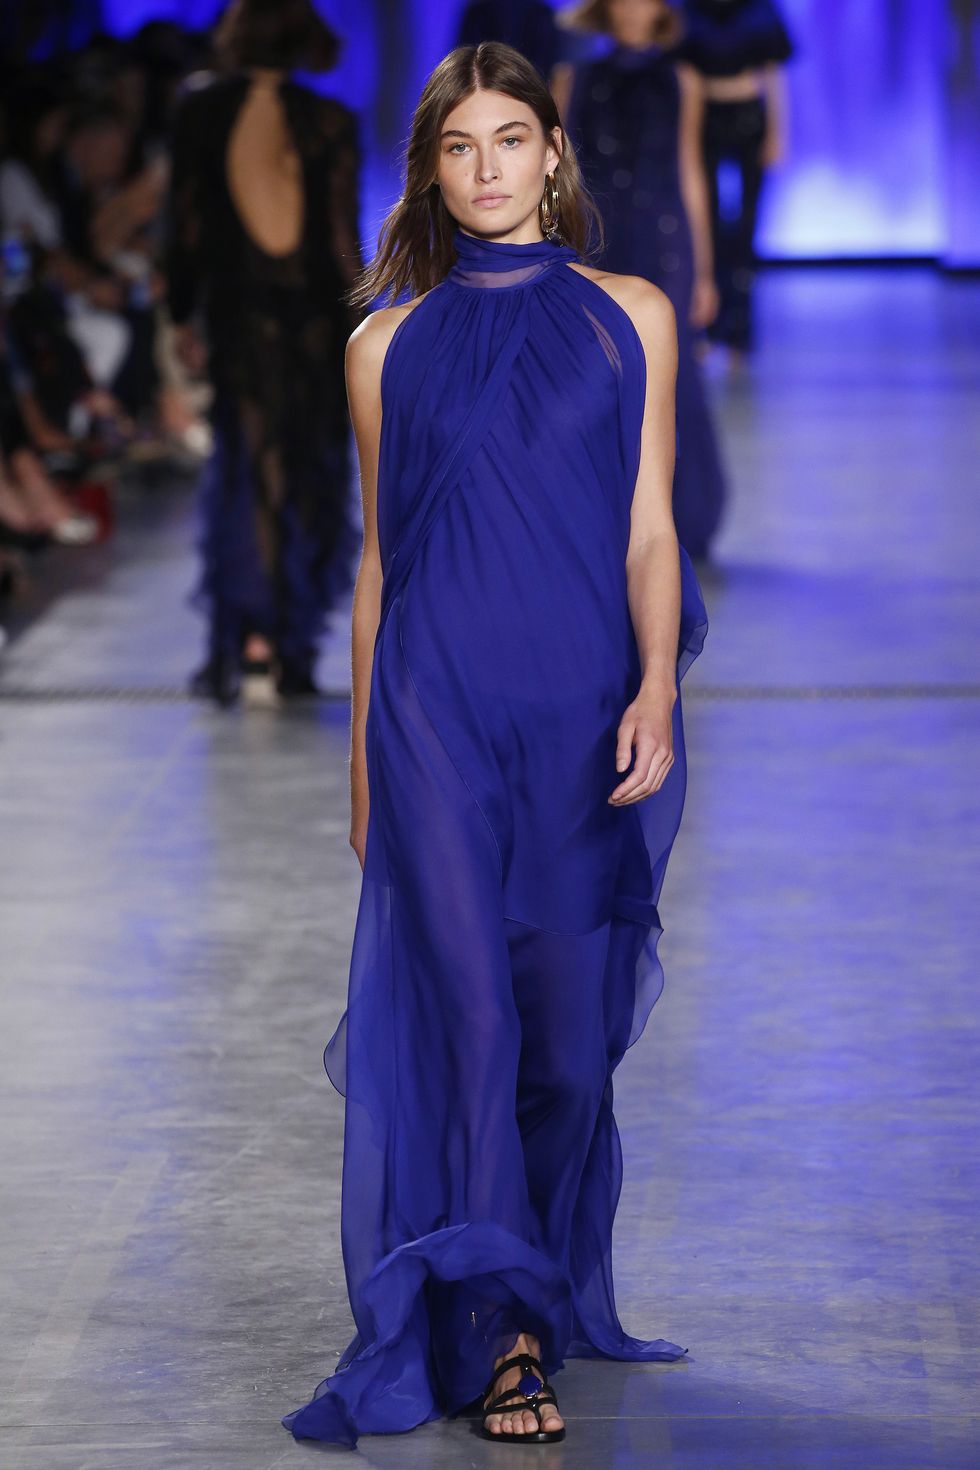 Alberta Ferretti - Runway - Milan Fashion Week Spring/Summer 2020